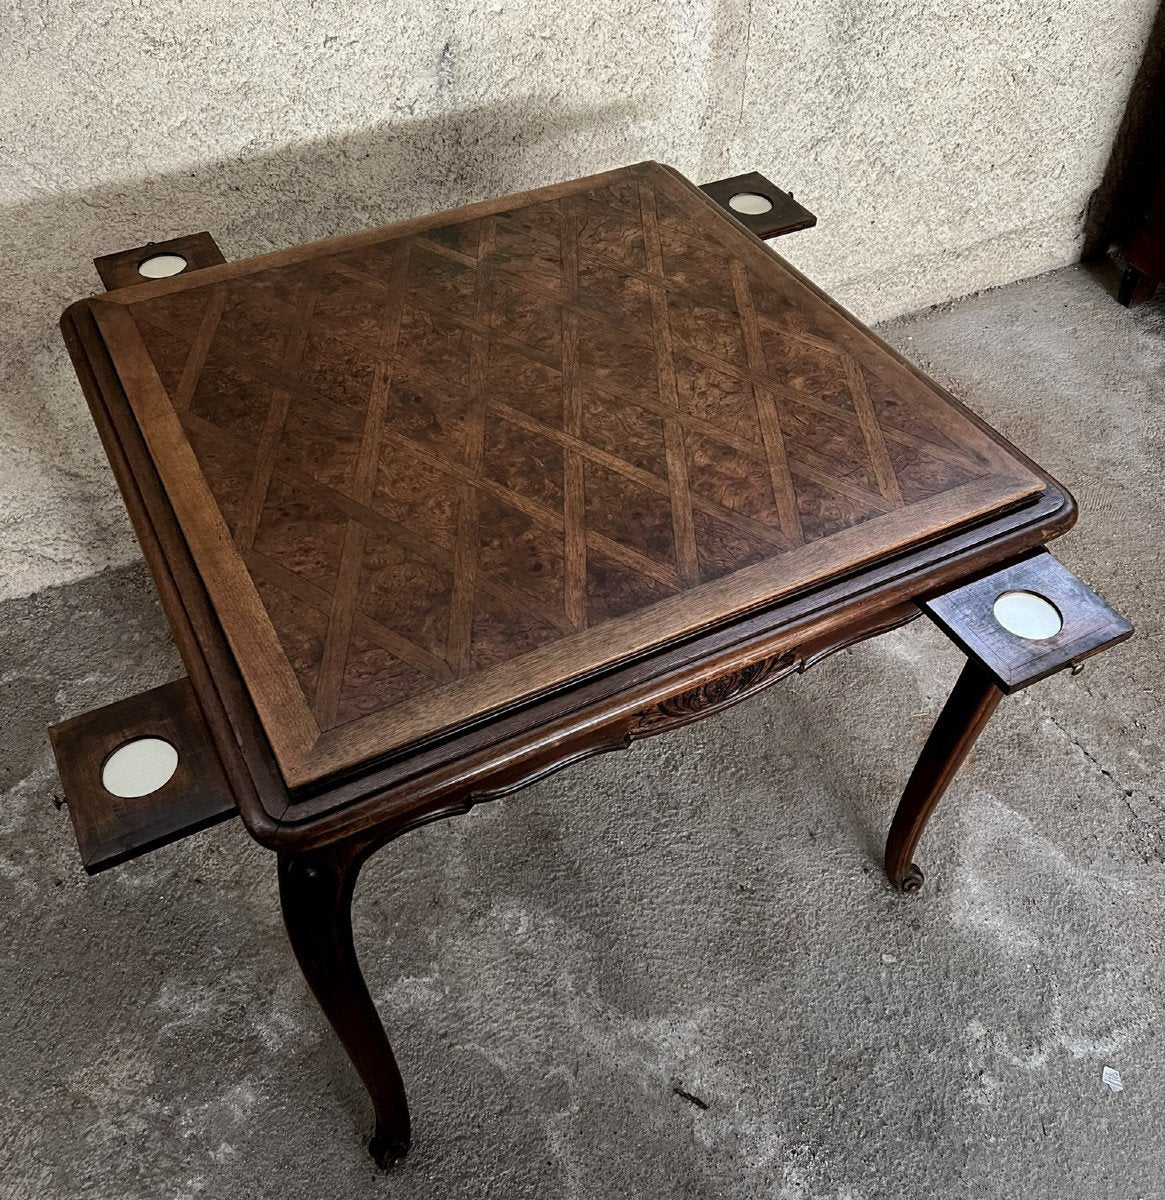 table a jeux style Louis XV Provençale en marqueterie vers 1880